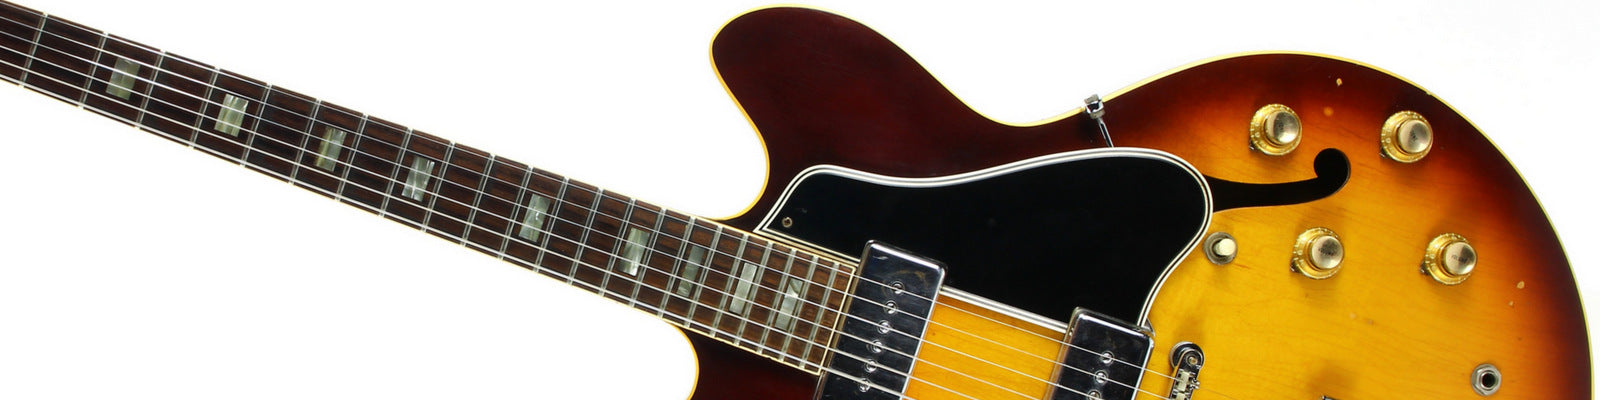 1960's Gibson ES-330 in Sunburst